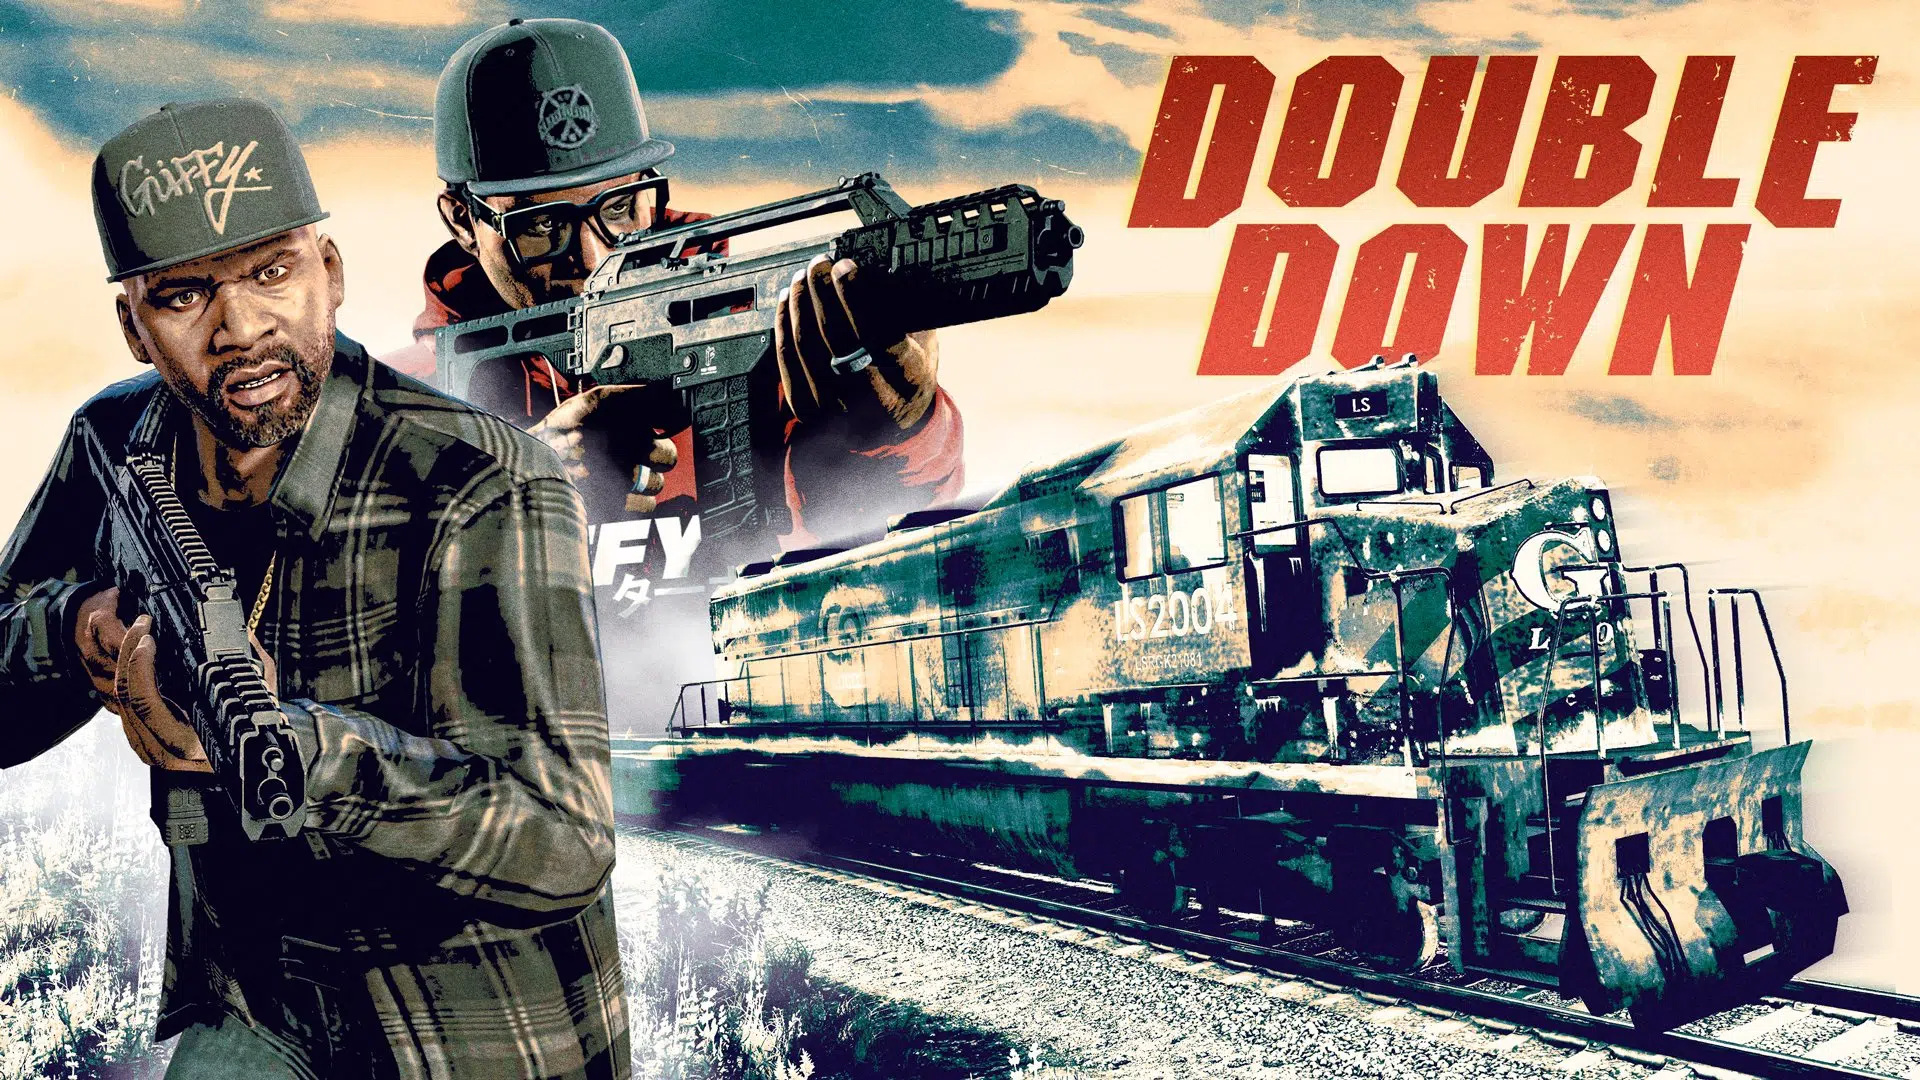 Imagem com Franklin e Lamar com o anúncio do Double Down, um modo coop em GTA Online